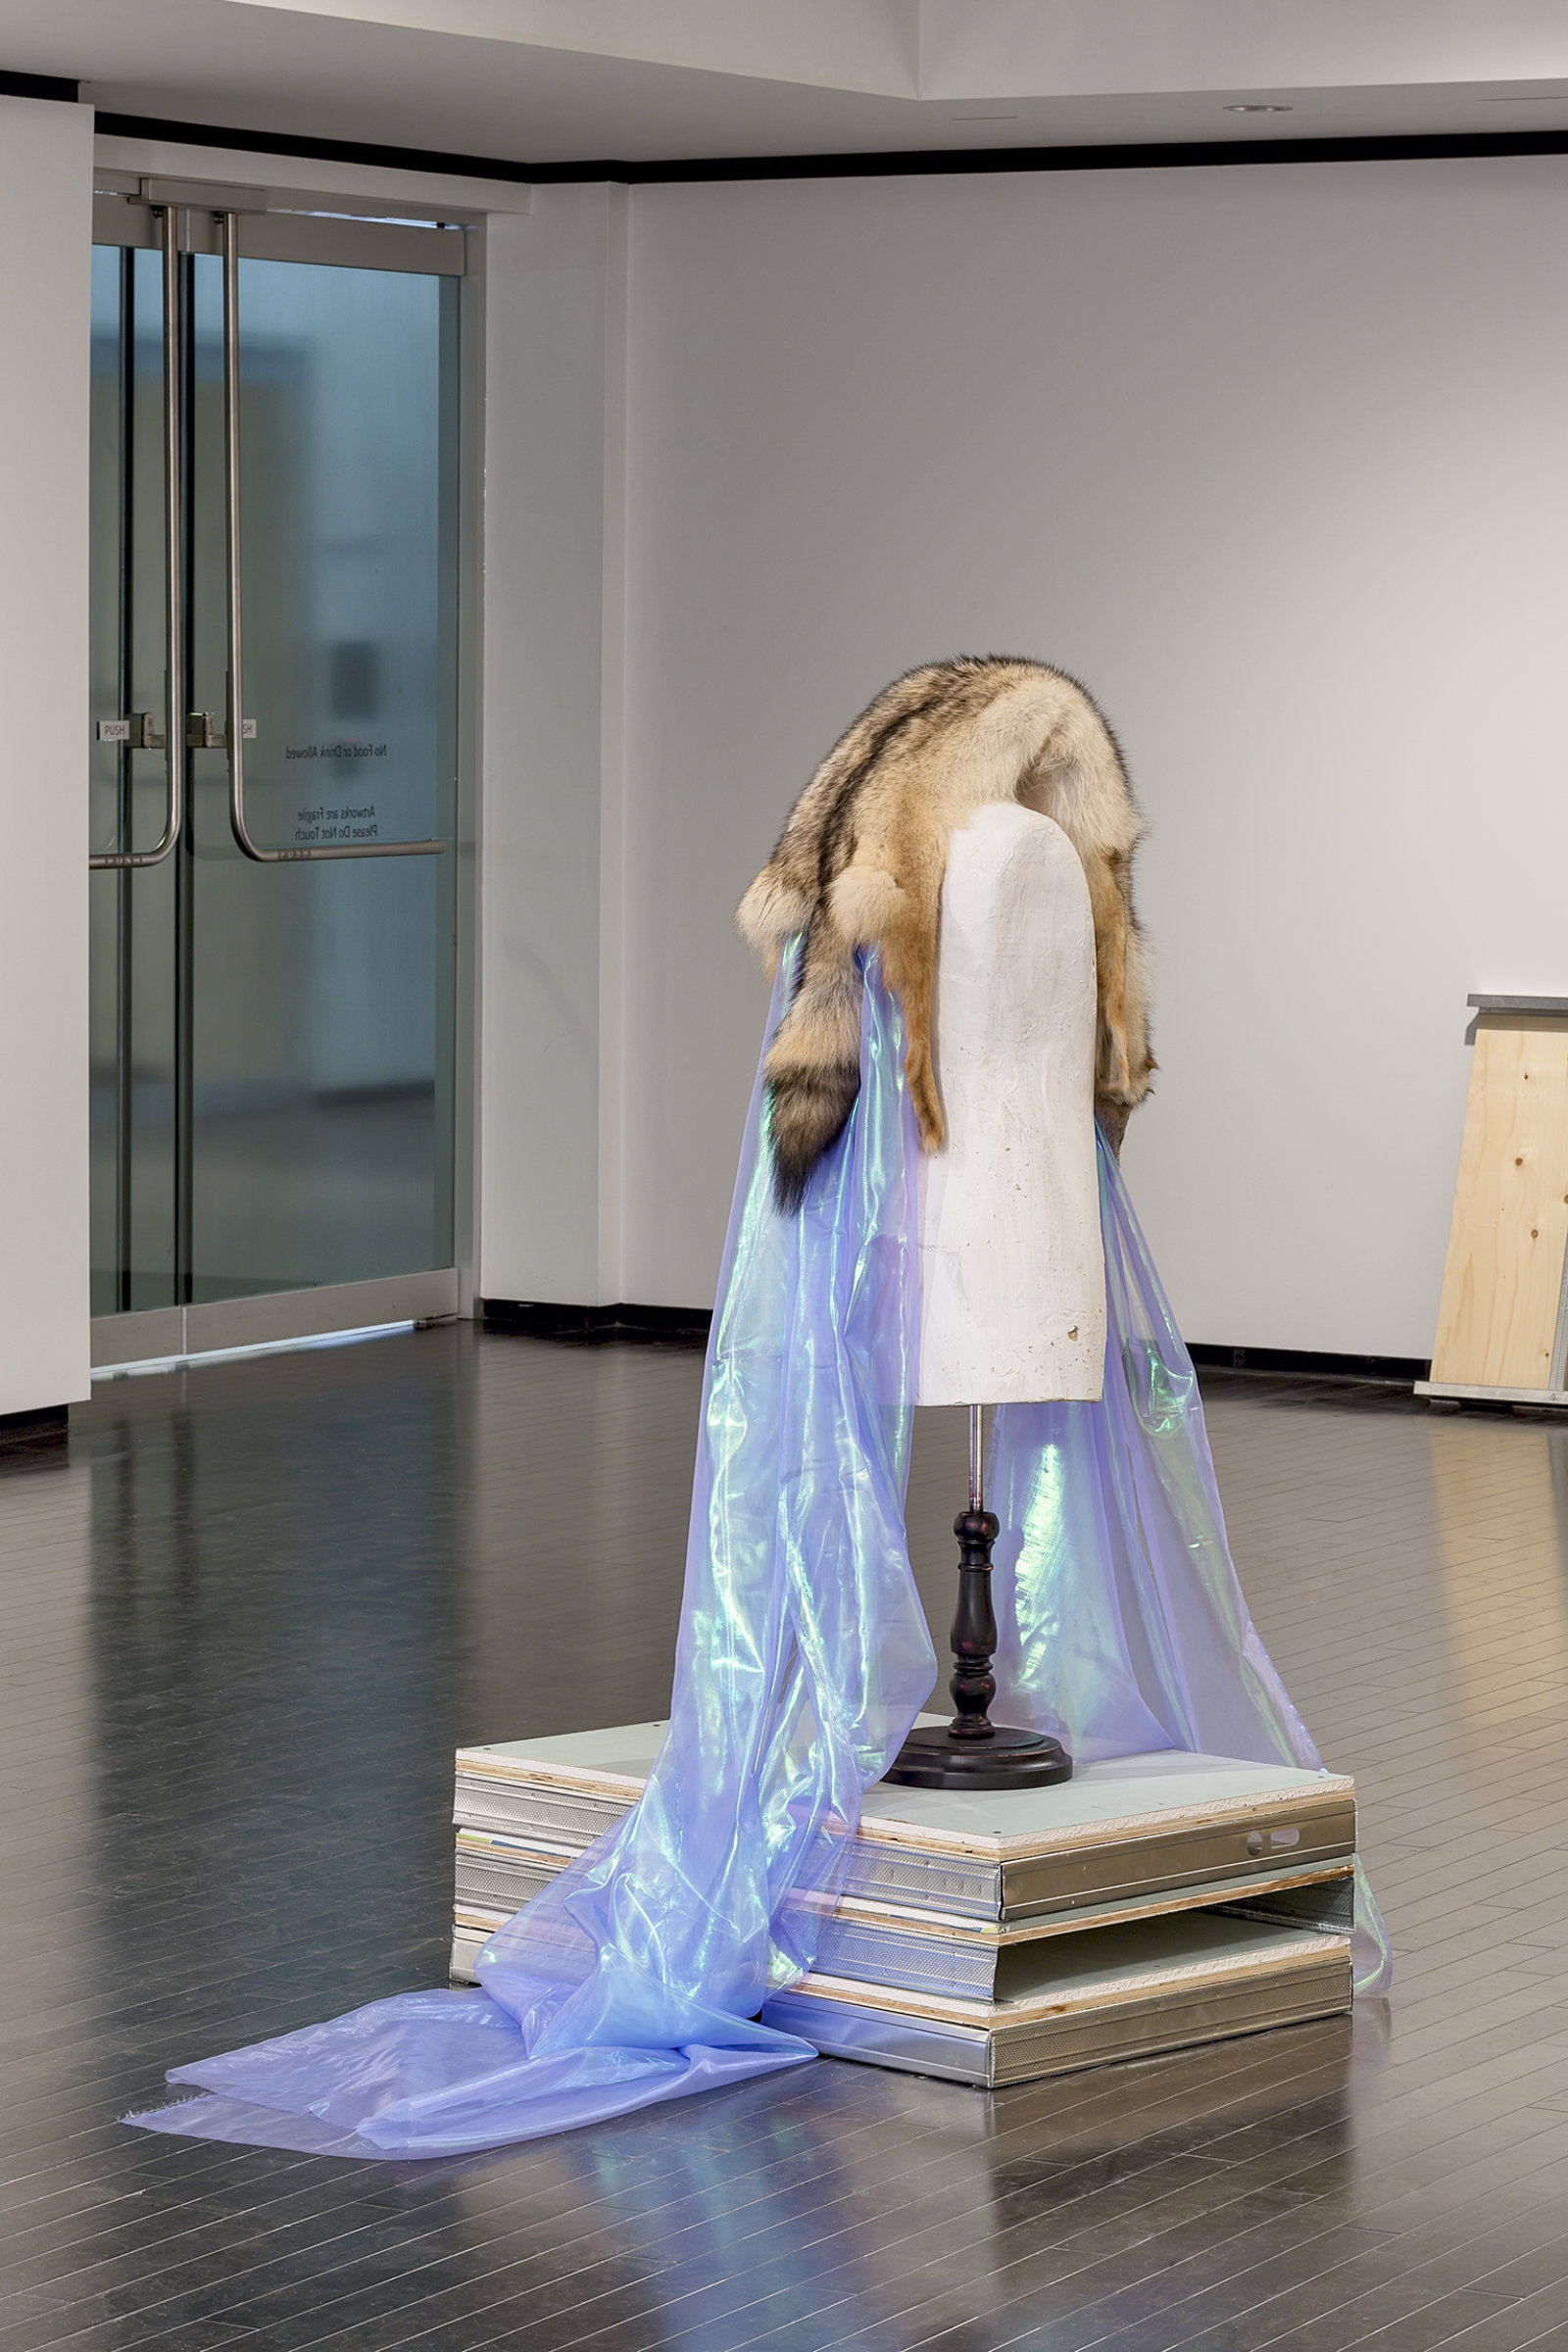 Duane Linklater, Beast of Burden, 2016, coyote fur, dress form, gypsum, steel, wood, dimensions variable